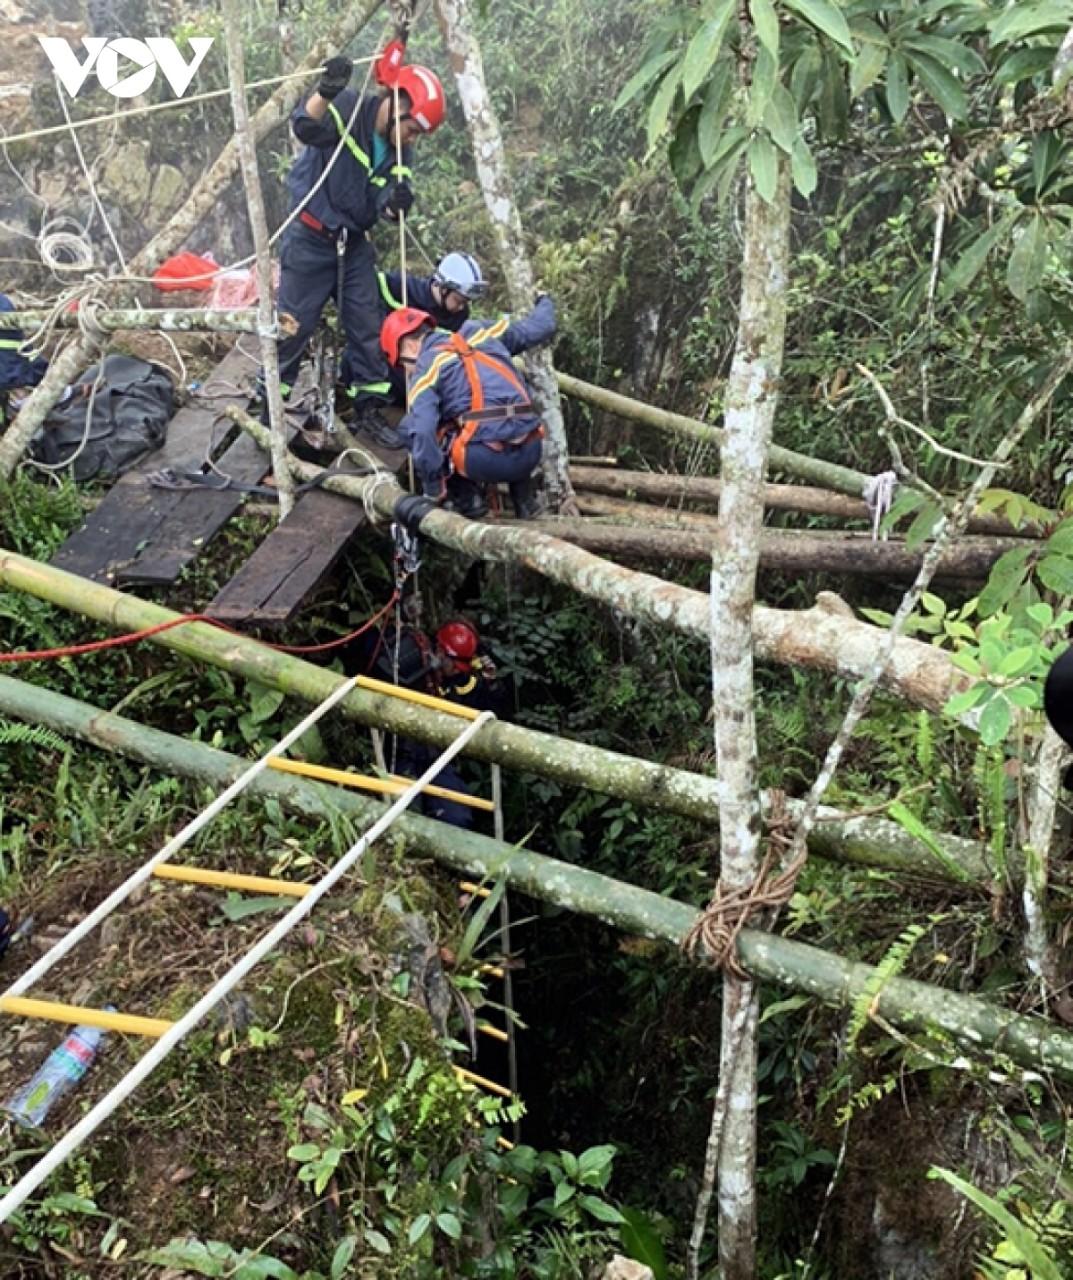 Trung tá Nguyễn Chí Thành tham gia cứu nạn, cứu hộ tìm nạn nhân mất tích dưới hang sâu khoảng 280 m thuộc xã Sùng Trái, huyện Đồng Văn, tỉnh Hà Giang (tháng 2/2020).